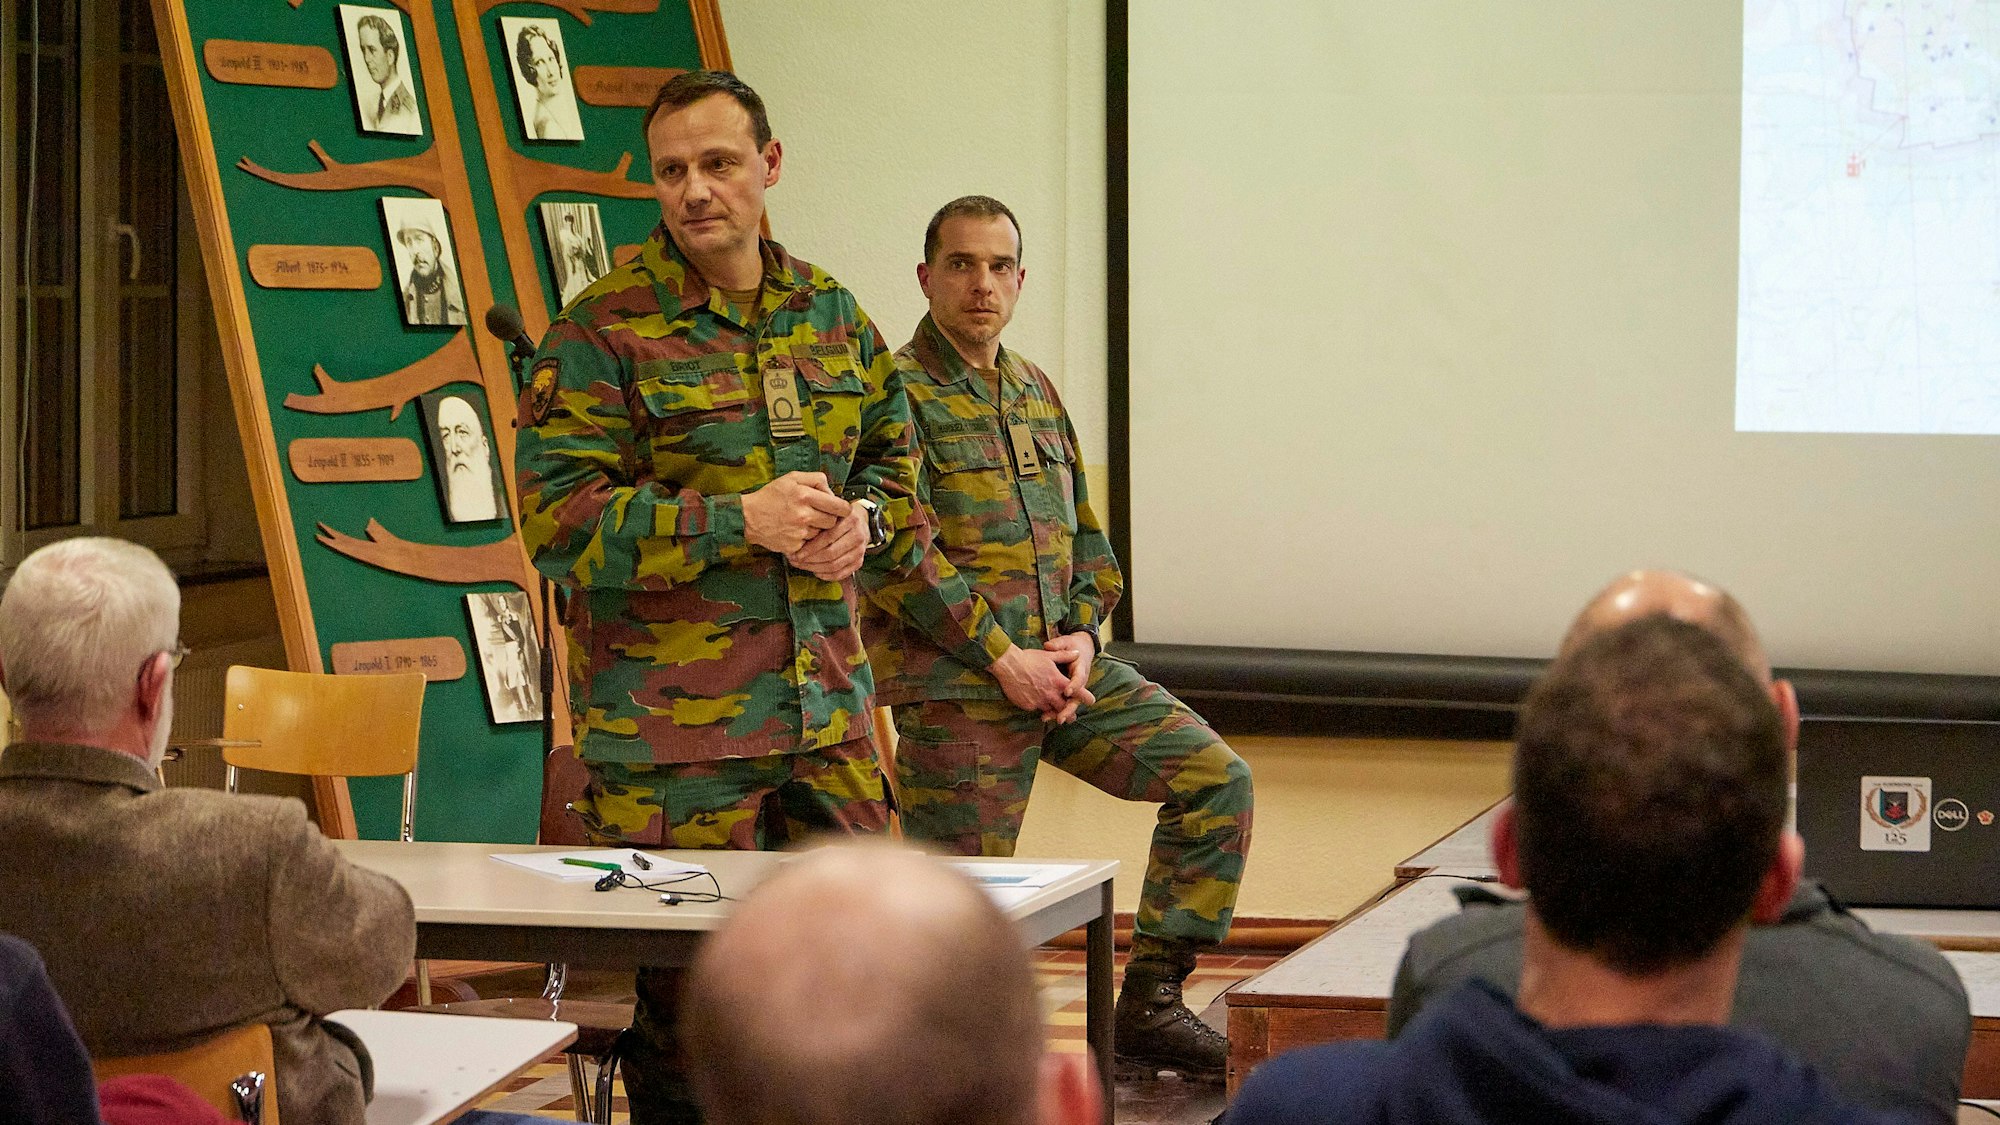 Zwei Männer in Militär-Uniformen sprechen vor einer Versammlung in einem Saal.